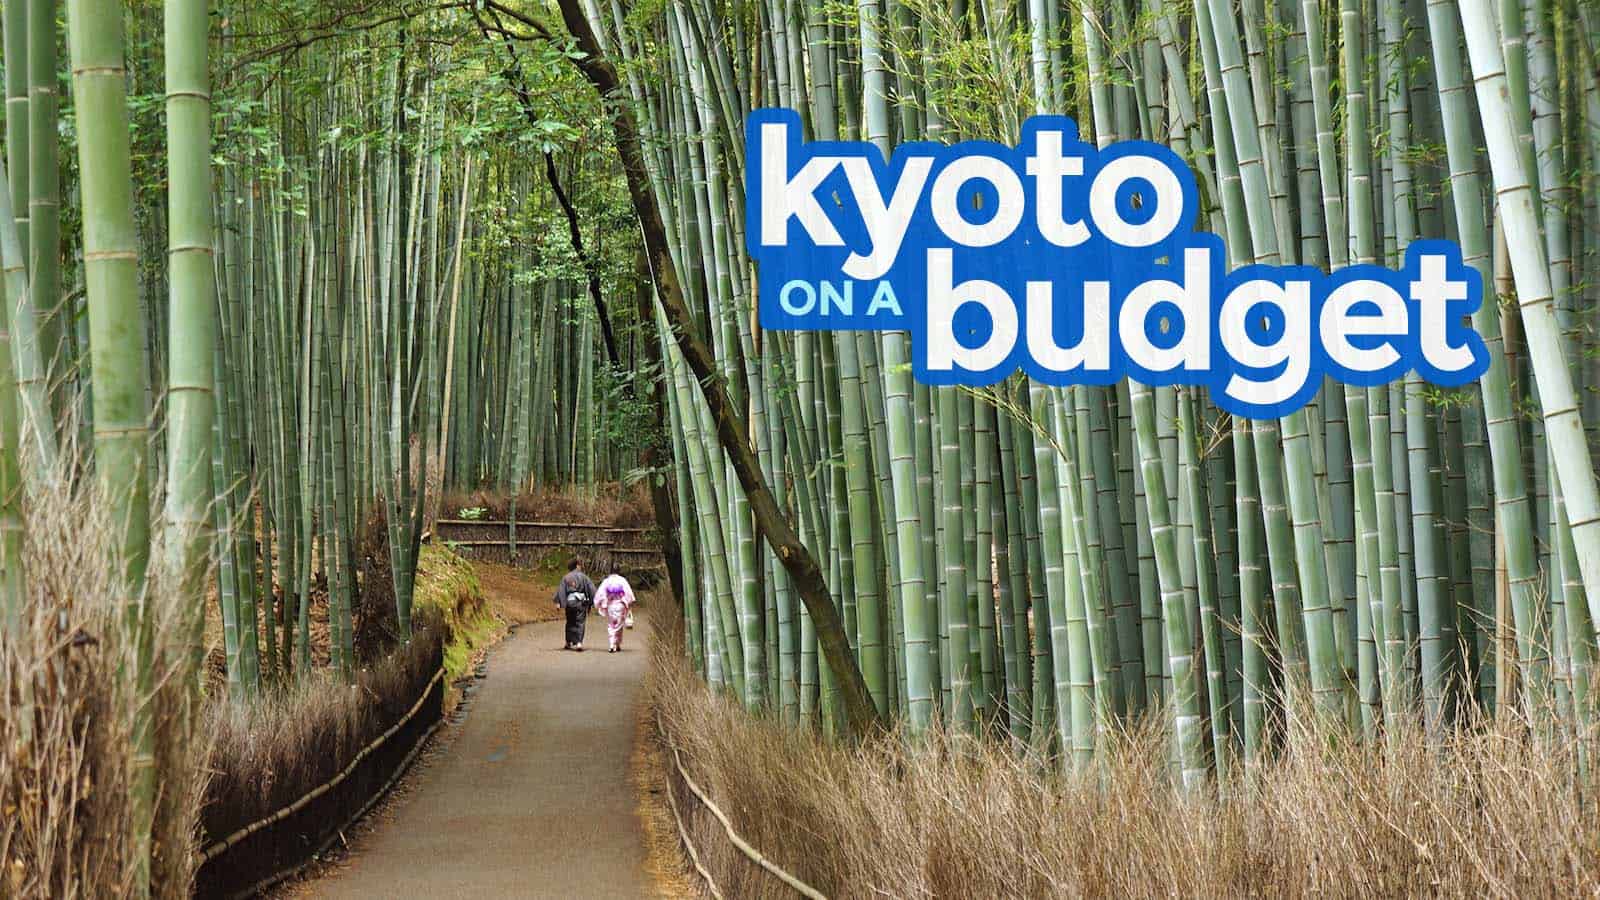 京都旅游指南:预算路线，要做的事情